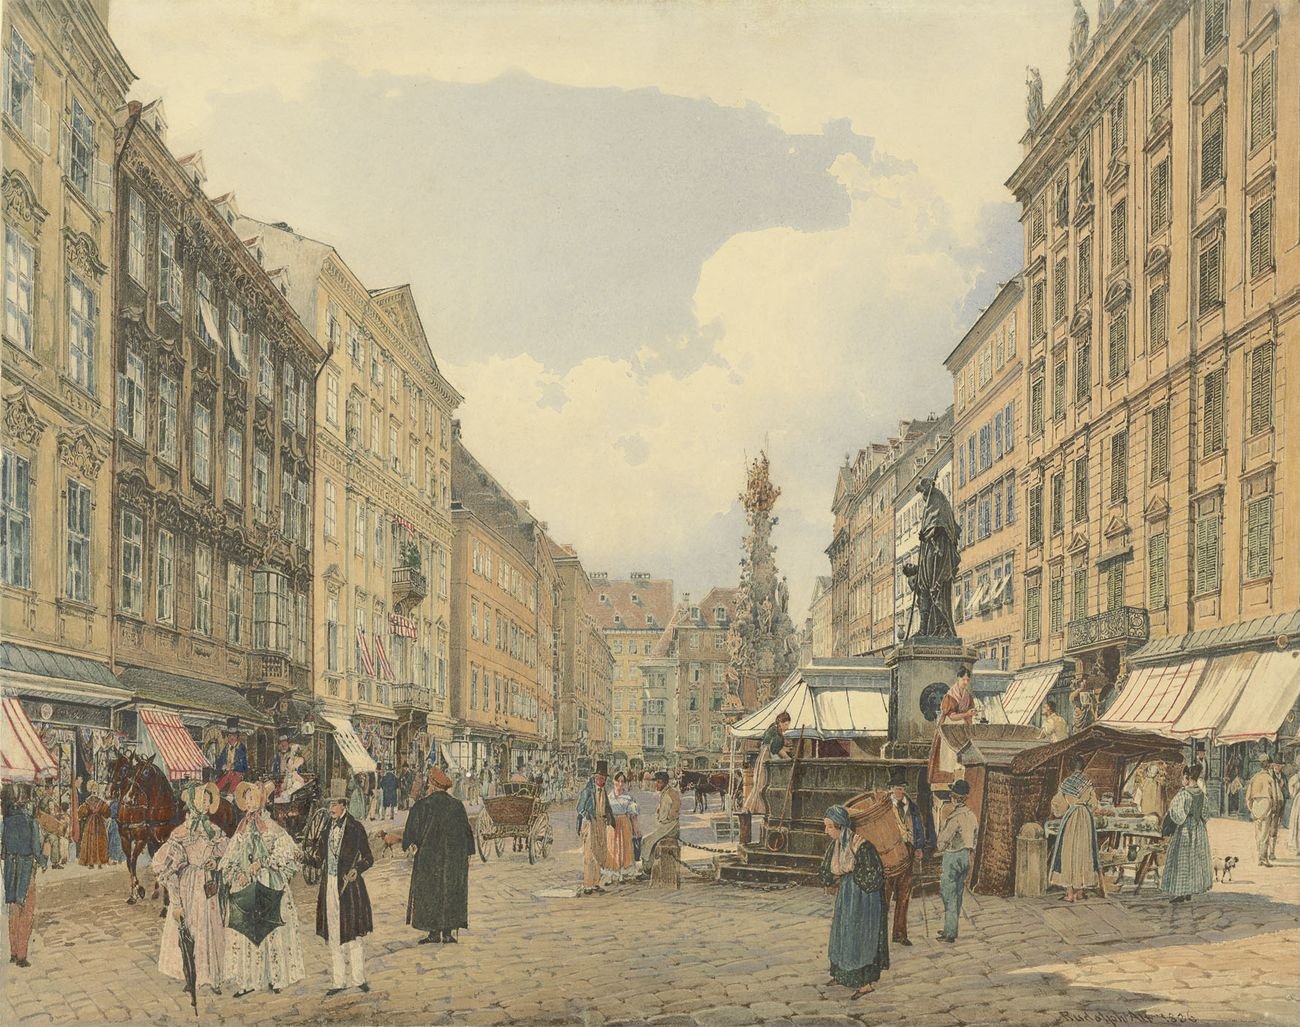 Rudolf von Alt, Graben, Vienna, 1838. Collezione privata